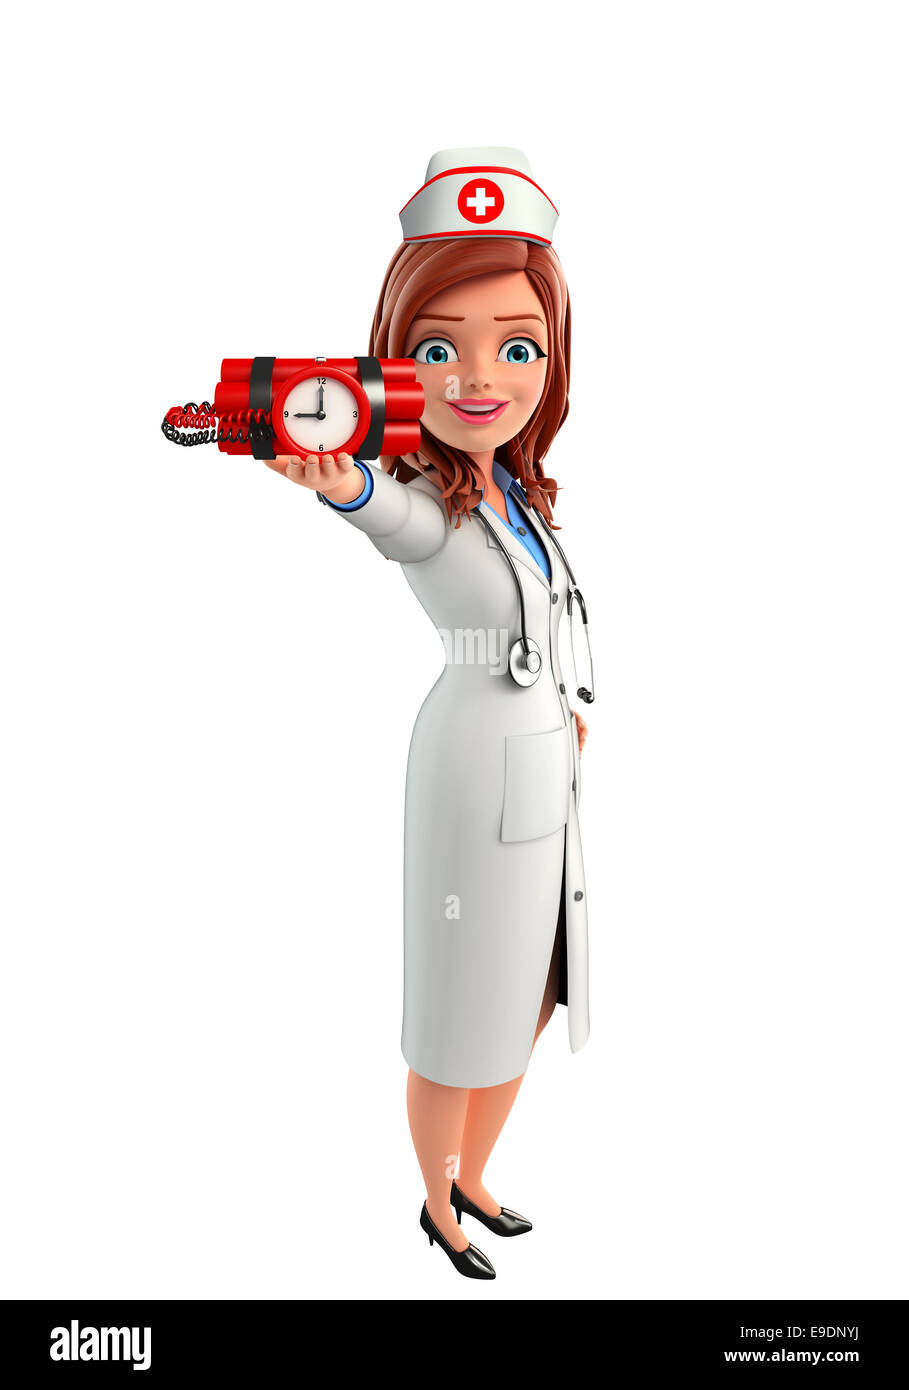 Enfermera de dibujos animados fotografías e imágenes de alta resolución -  Página 7 - Alamy